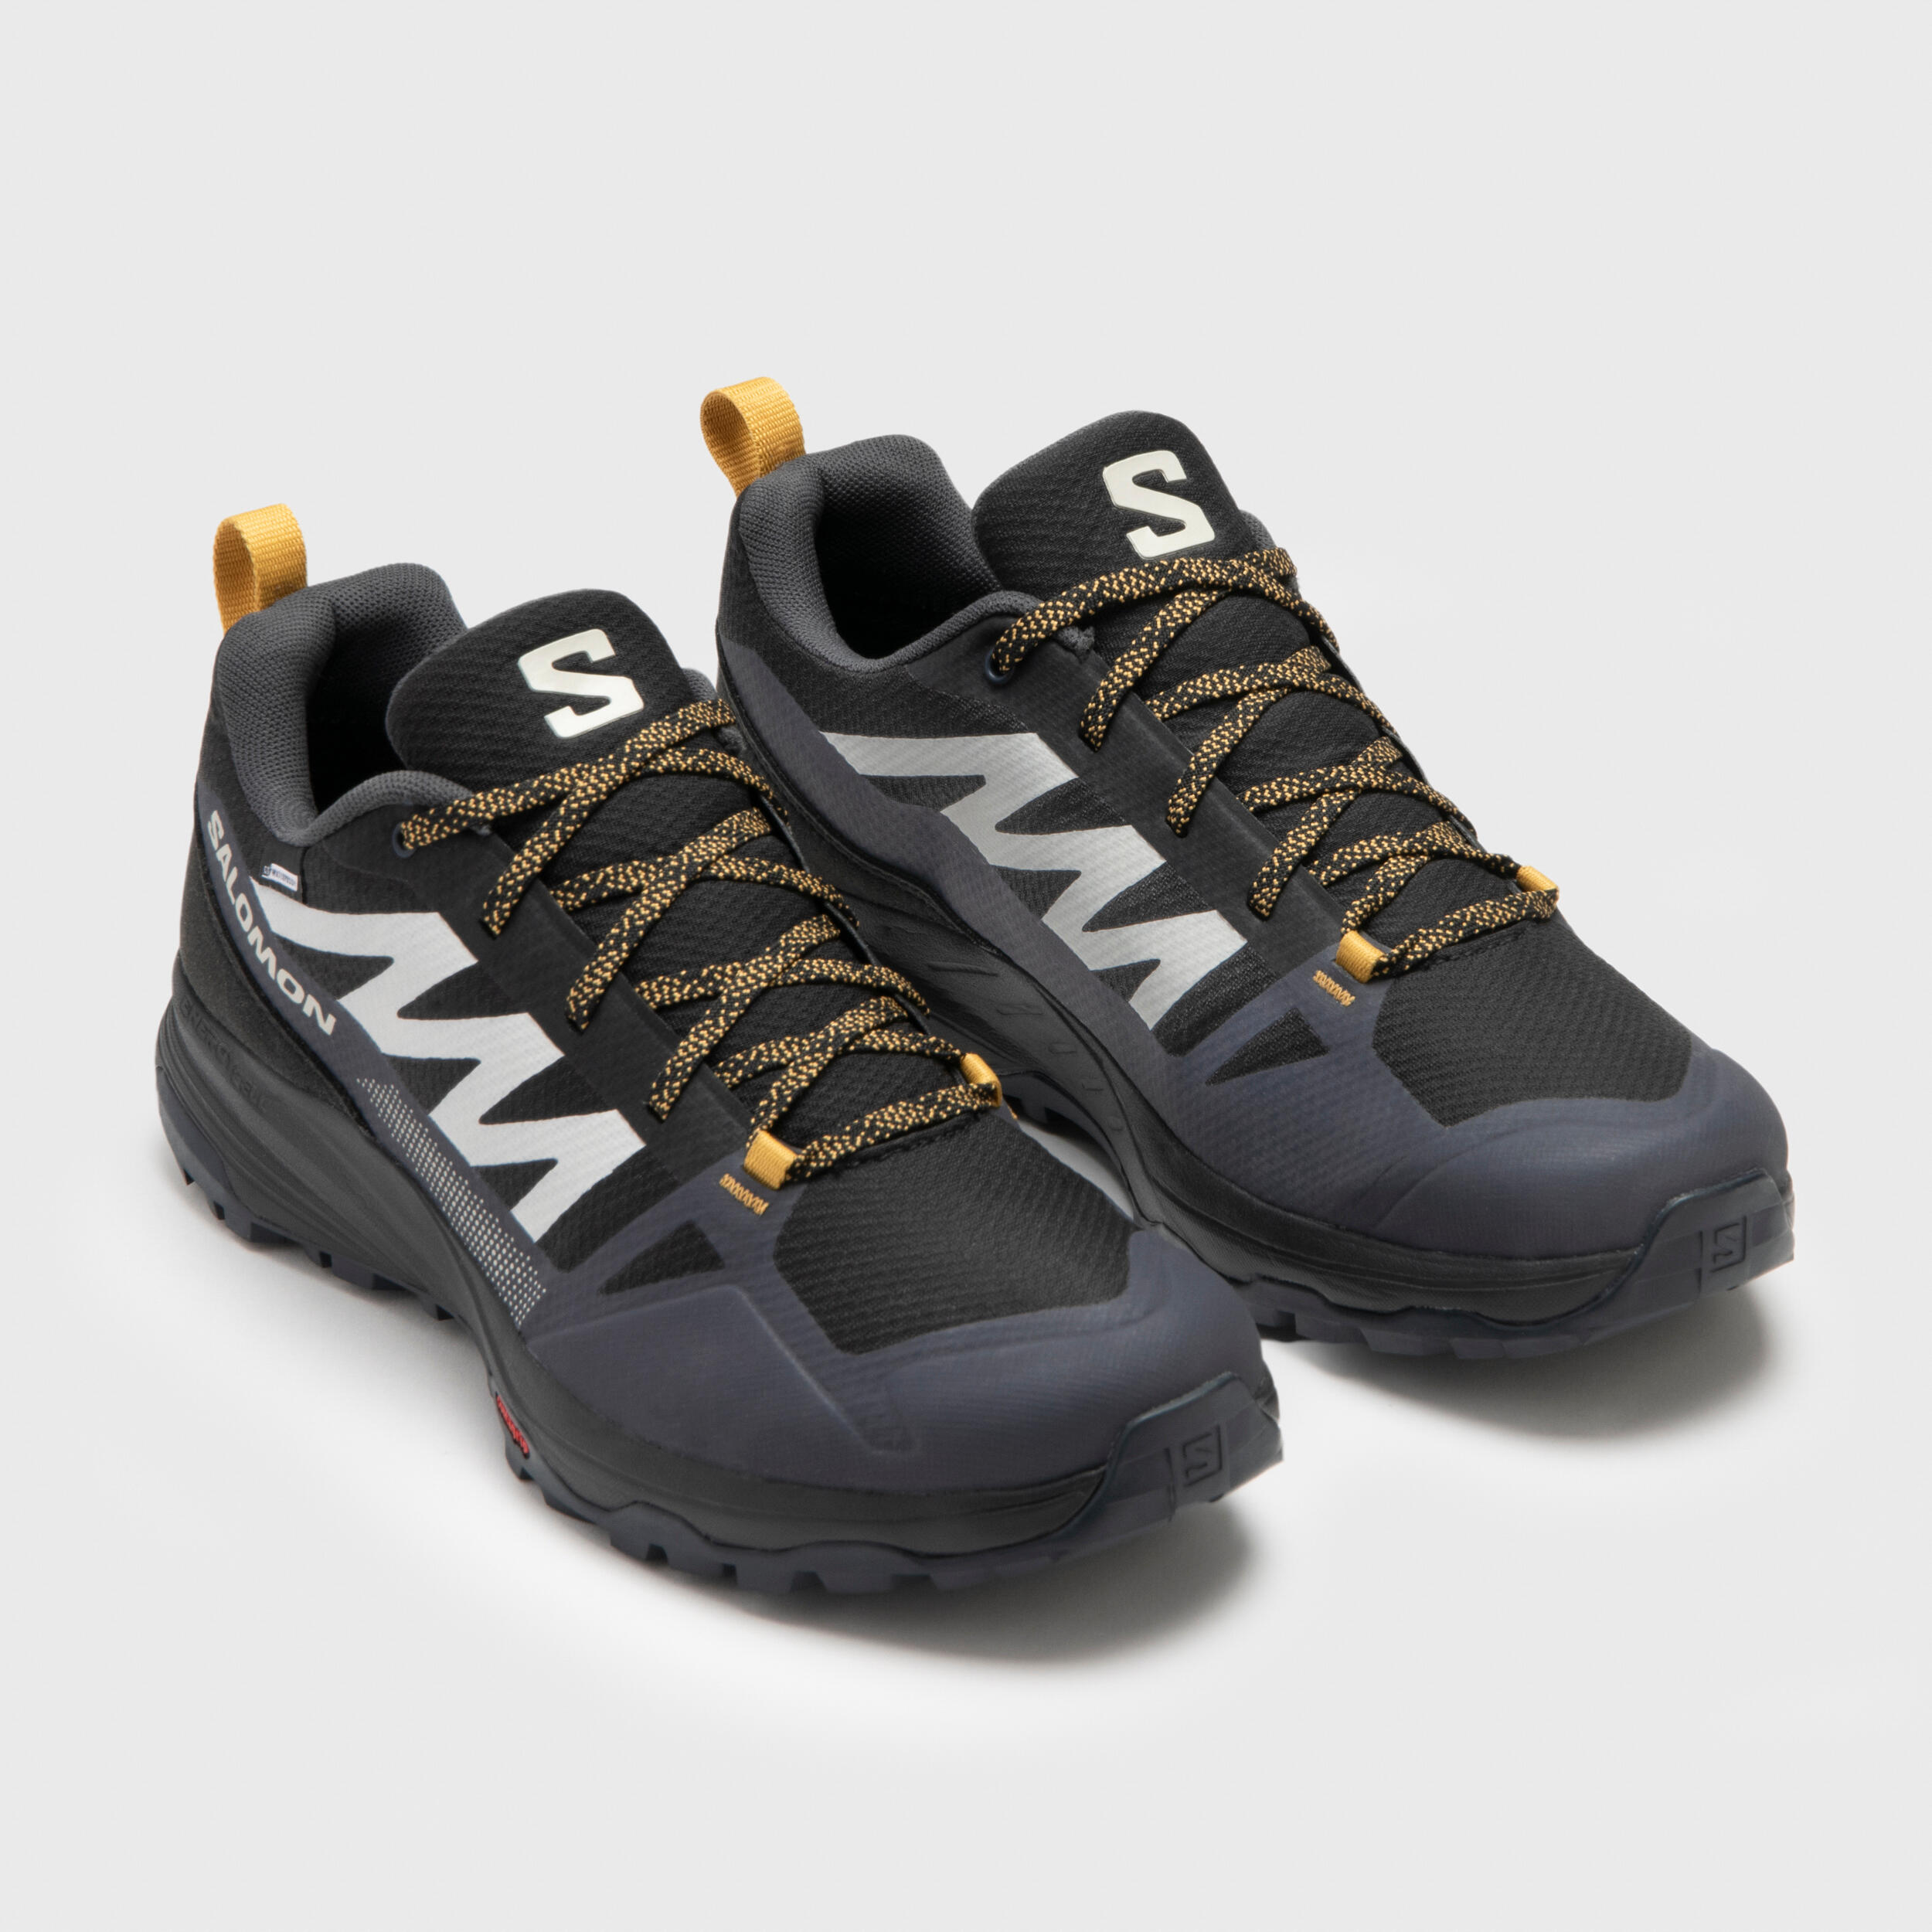 Waterproof mountain walking shoes - SALOMON SALIBA - Men 5/6